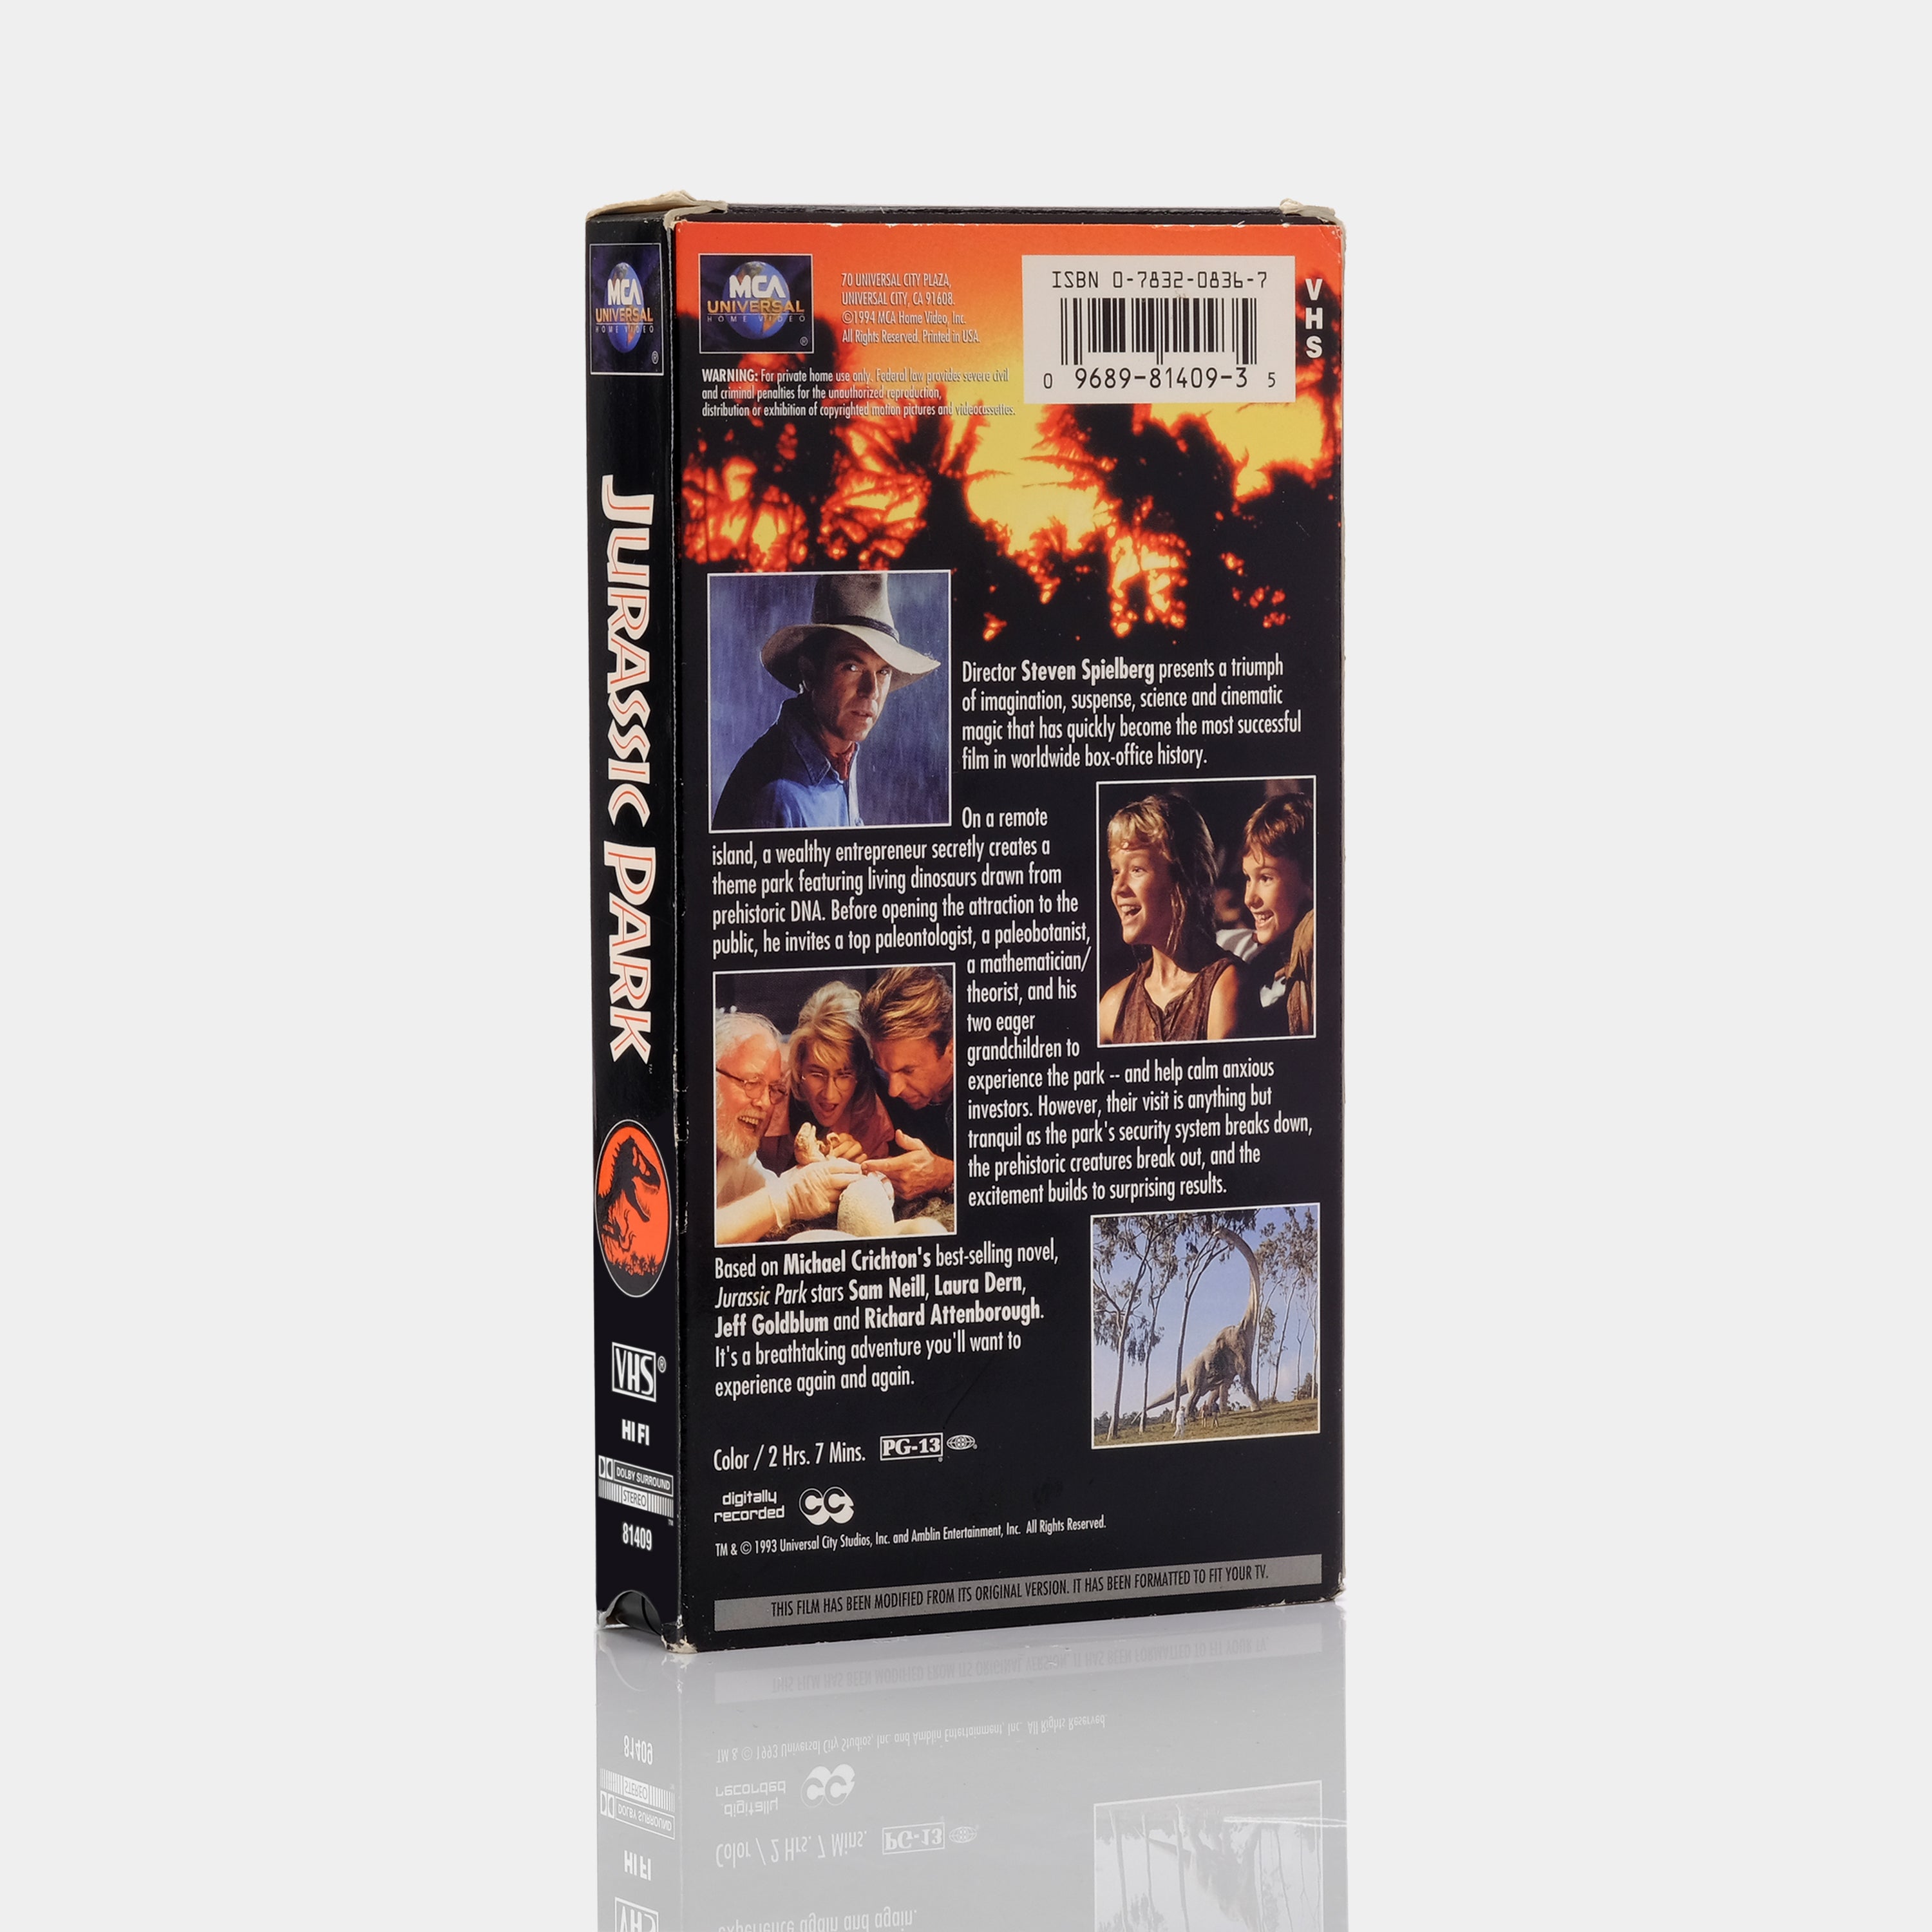 Jurassic Park VHS Tape